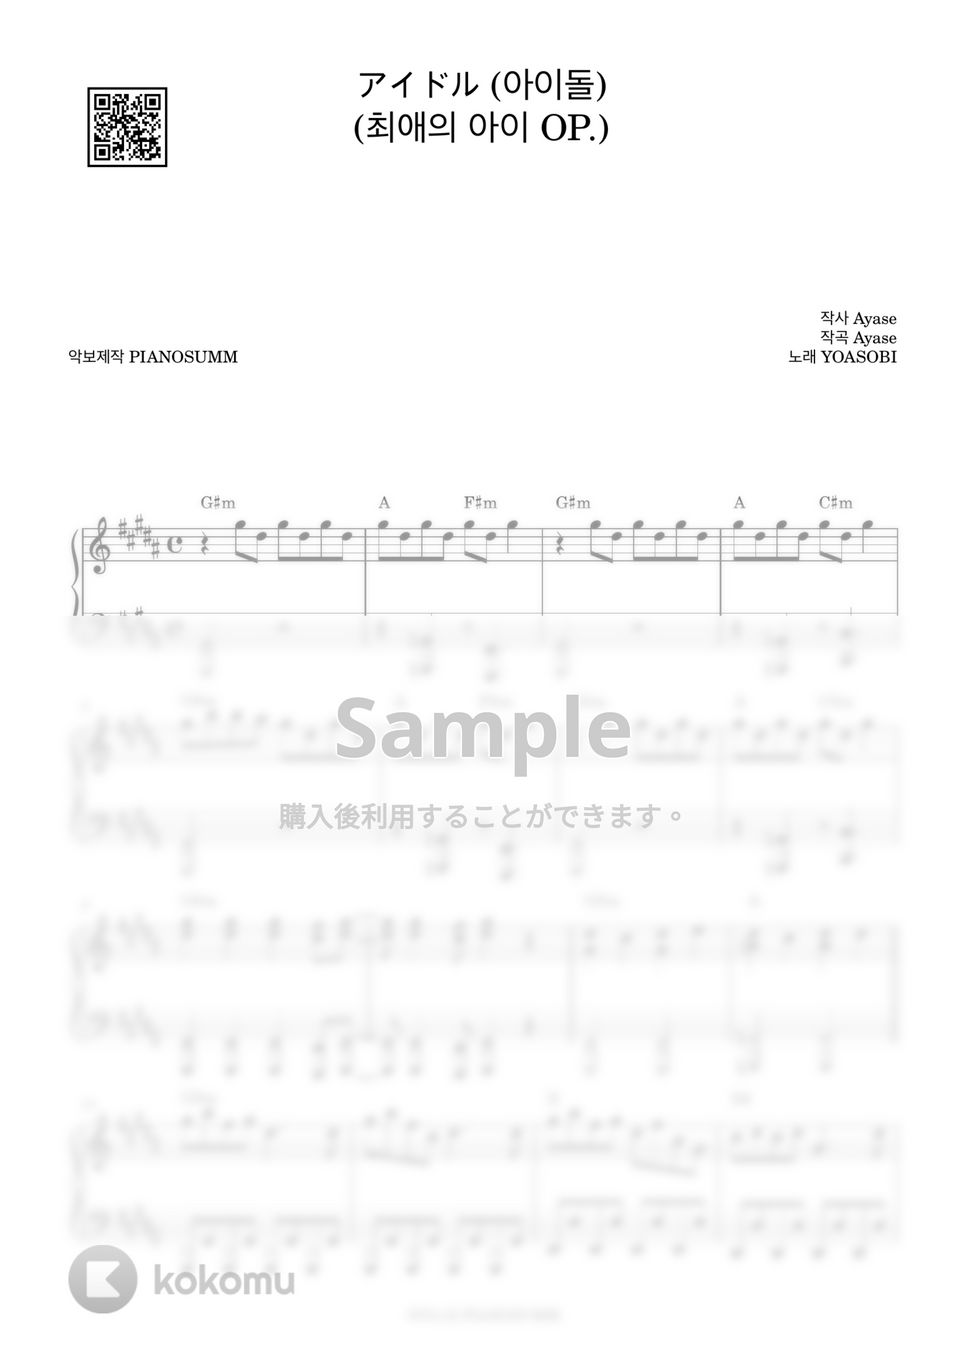 YOASOBI - アイドル (Includes Amkey) by PIANOSUMM